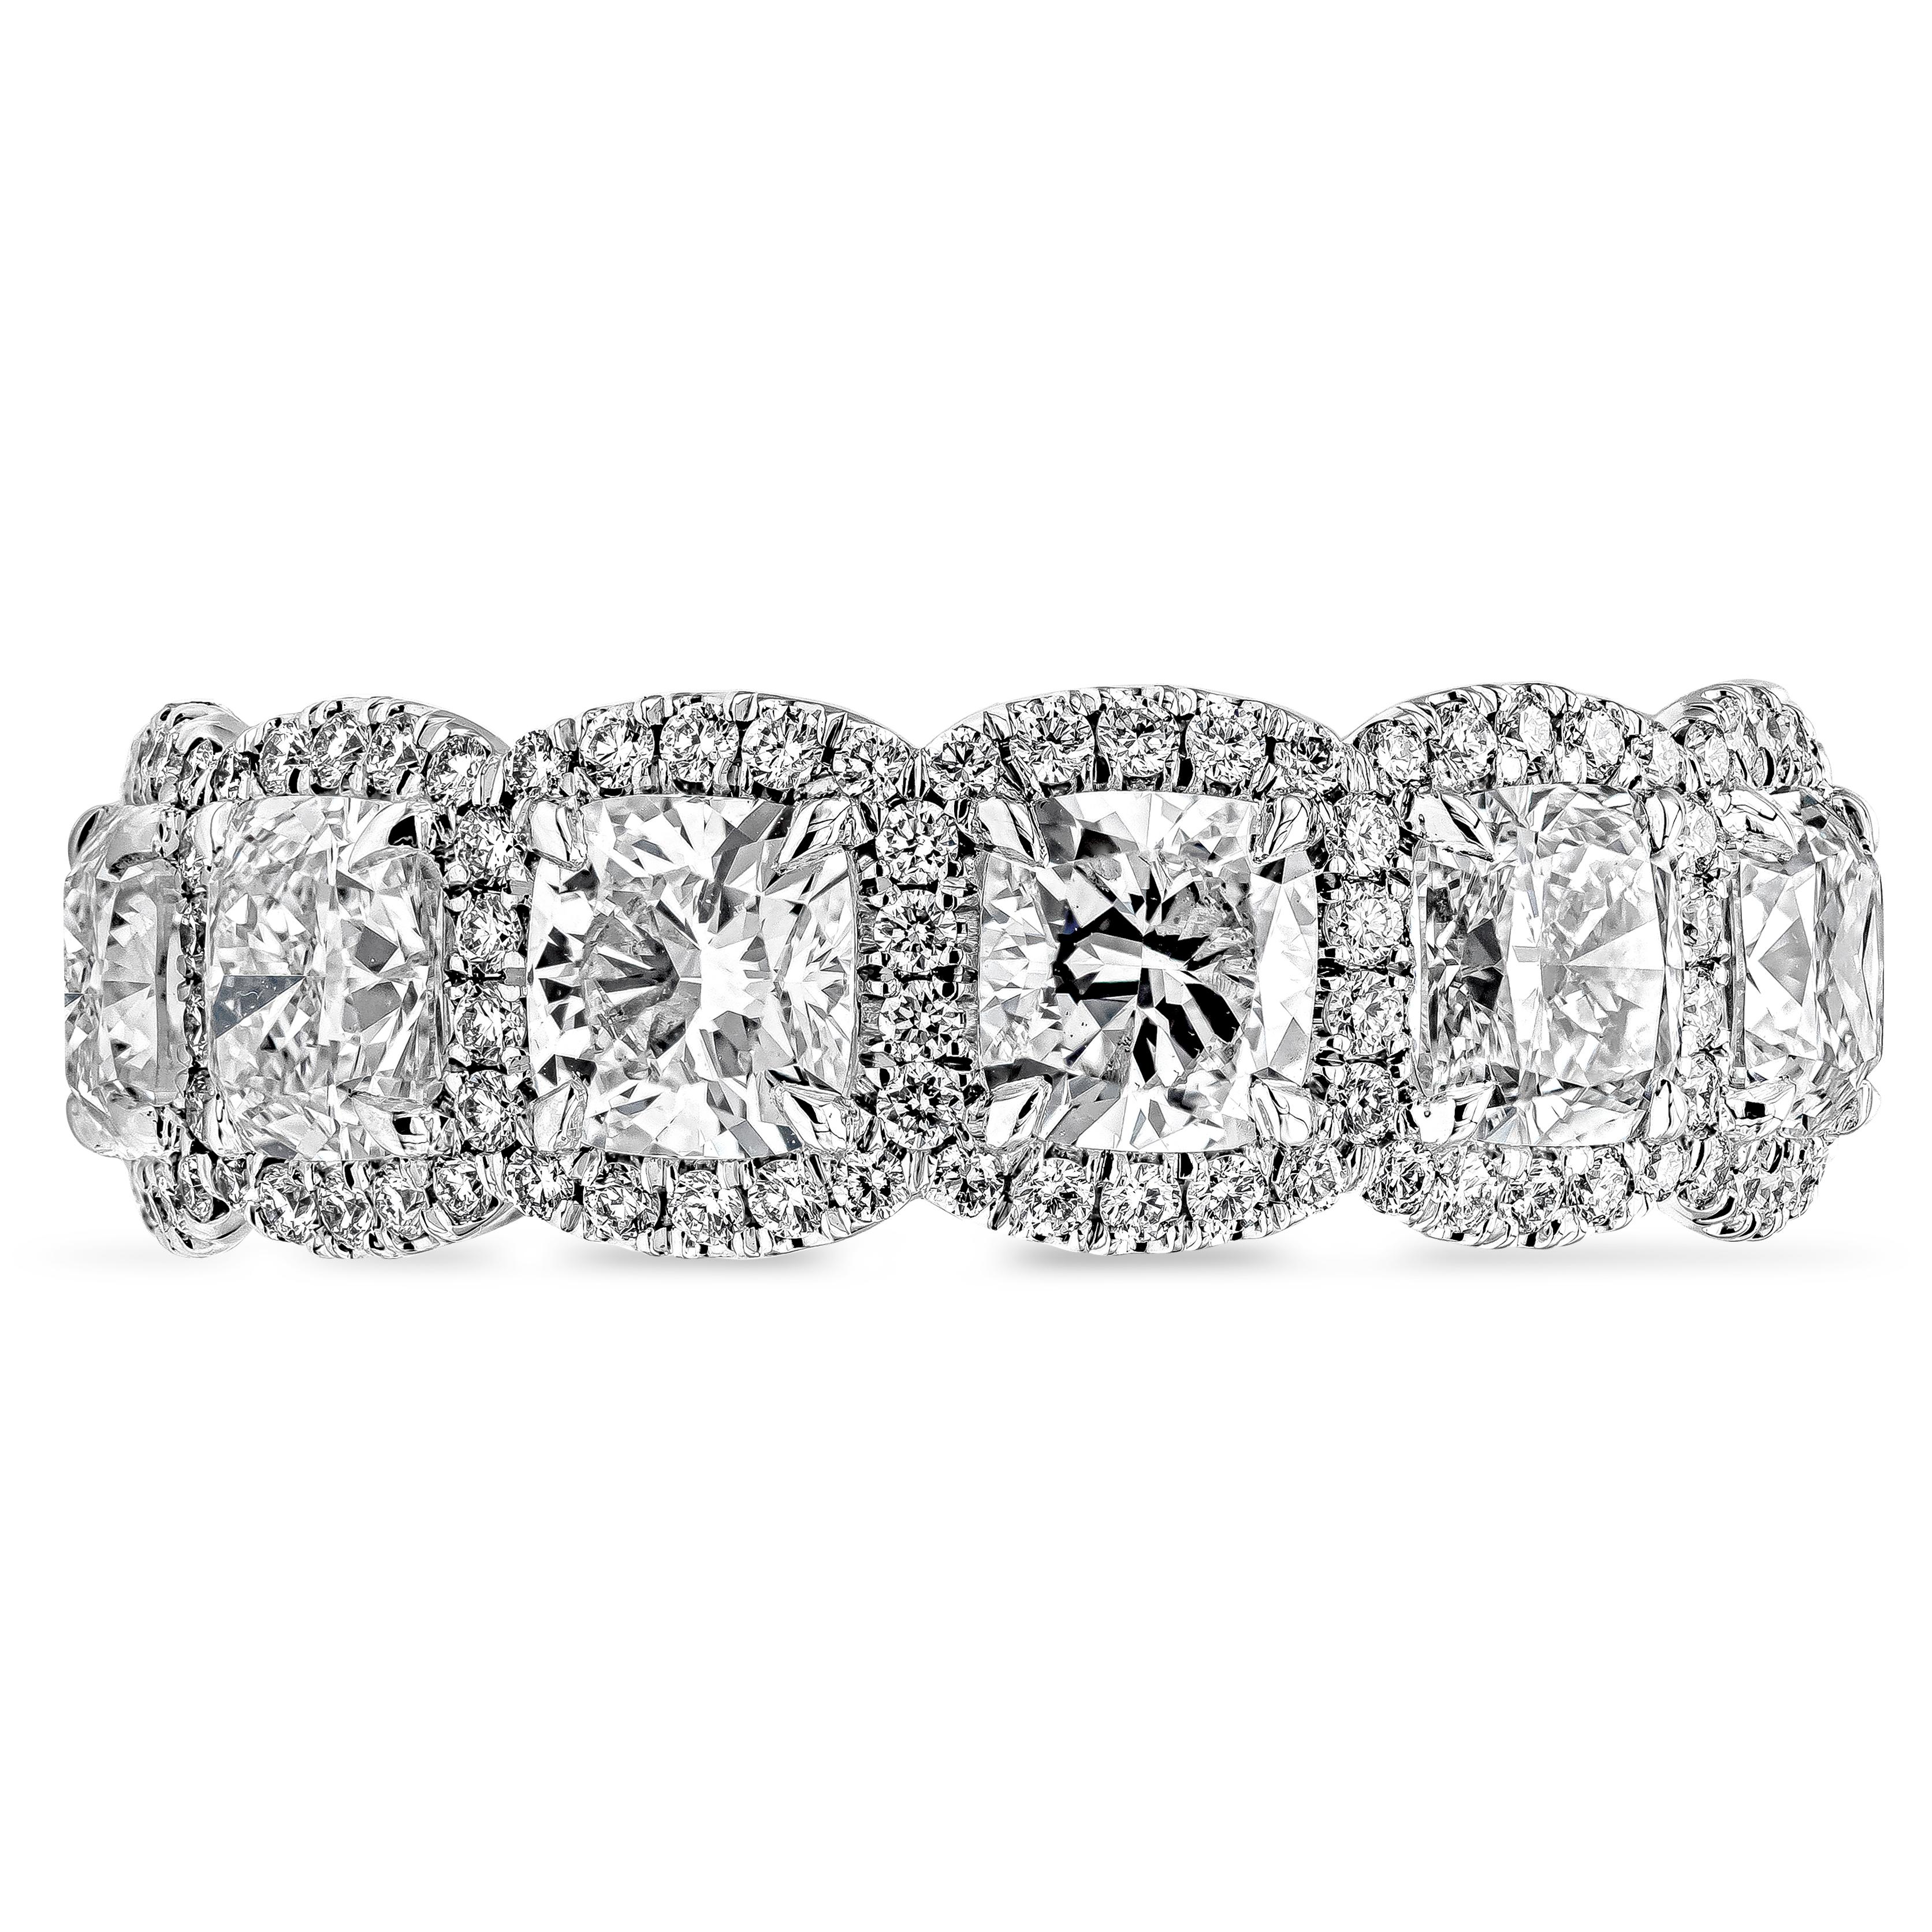 Ein aufwändig gestalteter Ehering mit einer Reihe von GIA-zertifizierten Diamanten im Kissenschliff, Farbe E-F und Reinheit VS-VVS. Jeder Diamant im Kissenschliff ist von einer Reihe runder Brillanten mit einem Gesamtgewicht von 0,70 Karat, Farbe